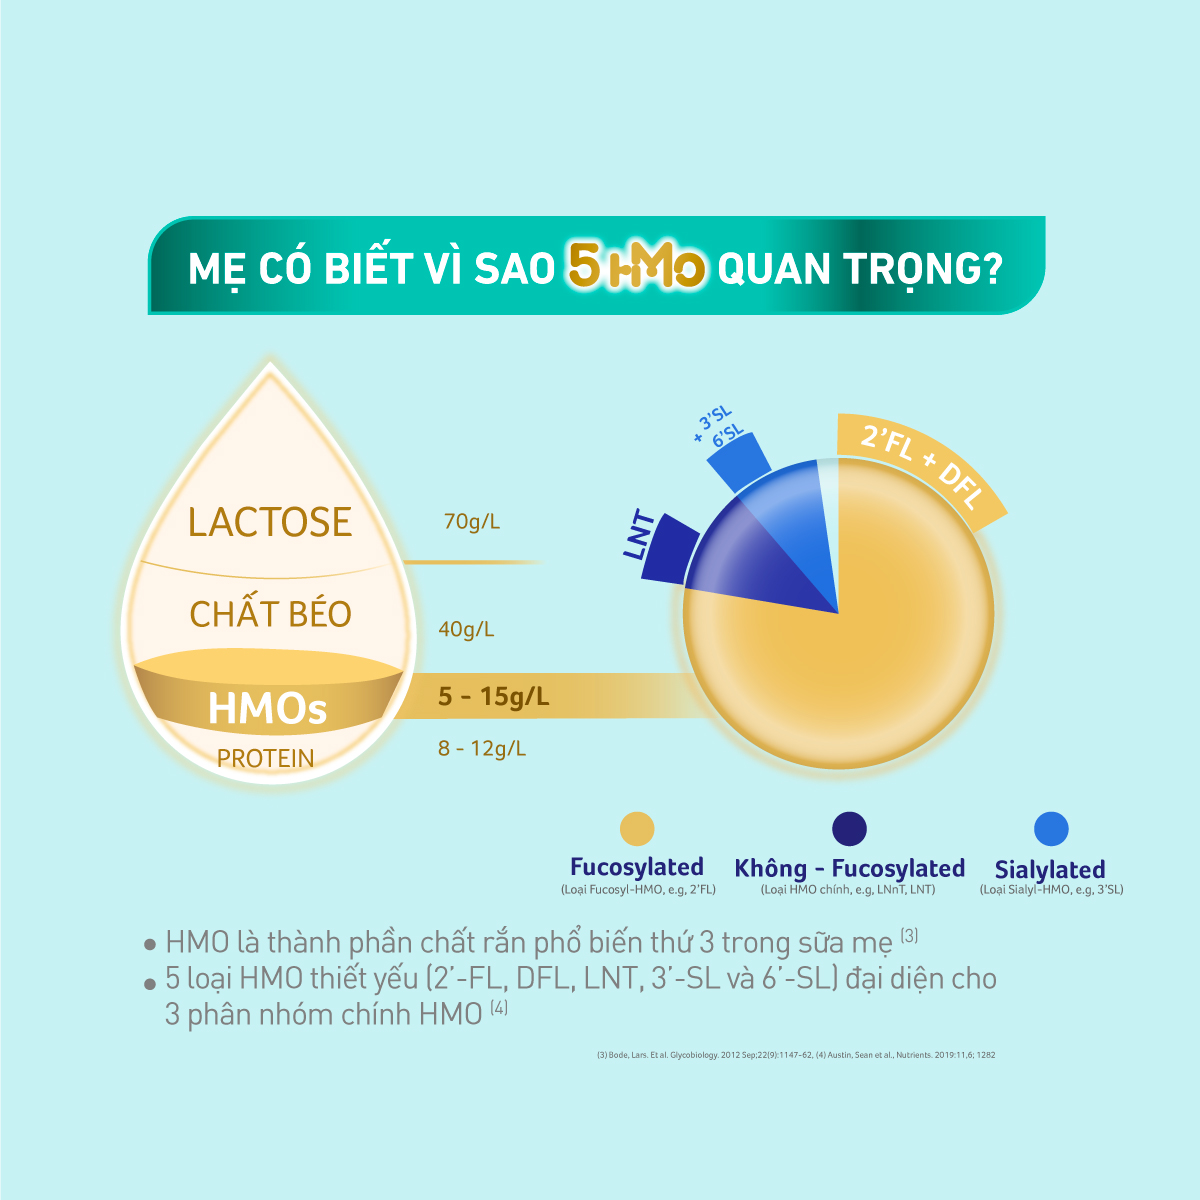 Bộ 3 Lon Sữa bột Nestlé NAN OPTIPRO PLUS 4 1500g/lon với 5HMO Giúp tiêu hóa tốt + Tăng cường đề kháng - Tặng Nồi lẩu Sunhouse